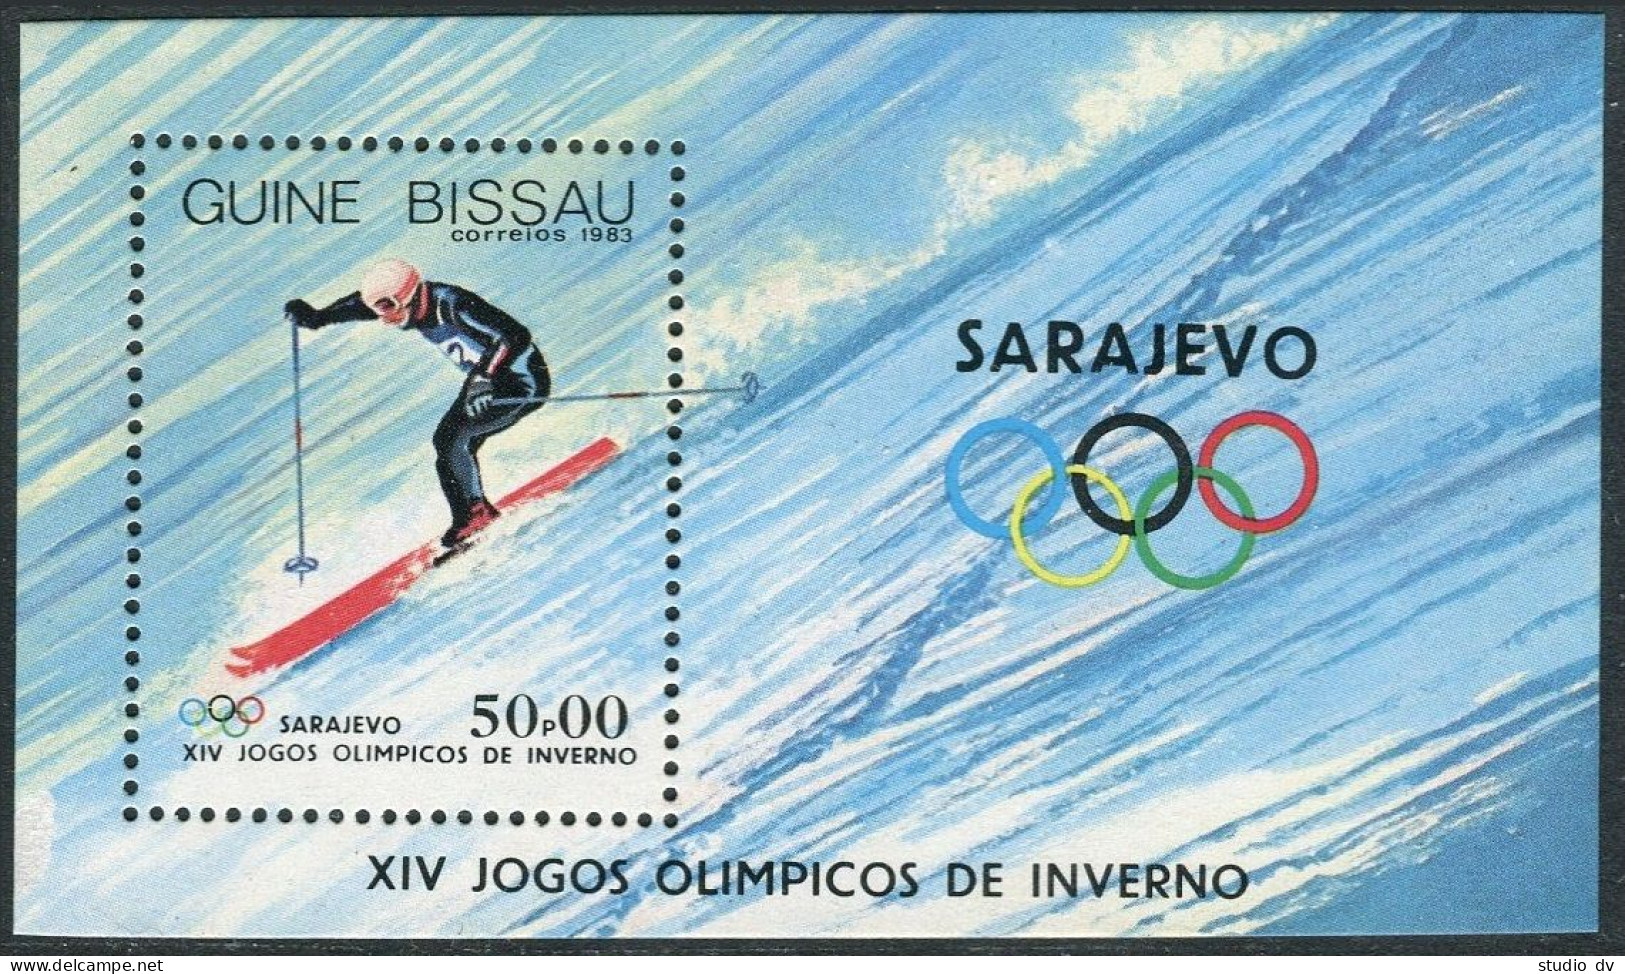 Guinea Bissau 505-512, MNH. Mi 709-715,Bl.255. Olympics, Sarajevo-1984. Hockey, - Guinea-Bissau